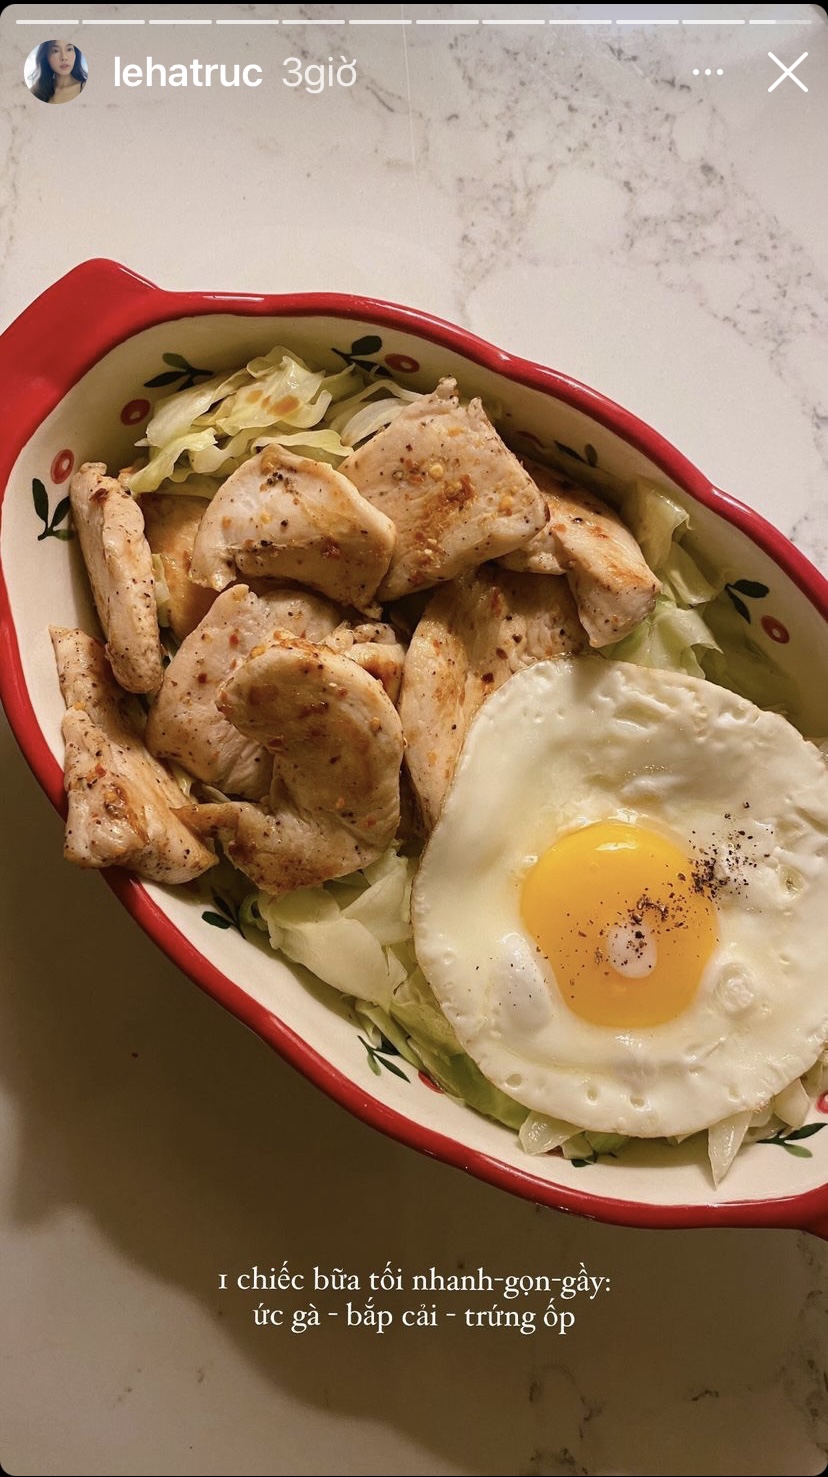 Chỉ bằng những nguyên liệu đơn giản và dễ kiếm như trứng, ức gà, bắp cải, travel blogger Lê Hà Trúc đã có một đĩa đồ ăn nhanh-gọn-gày với bắp cải luộc, trứng ốp-la và ức gà.